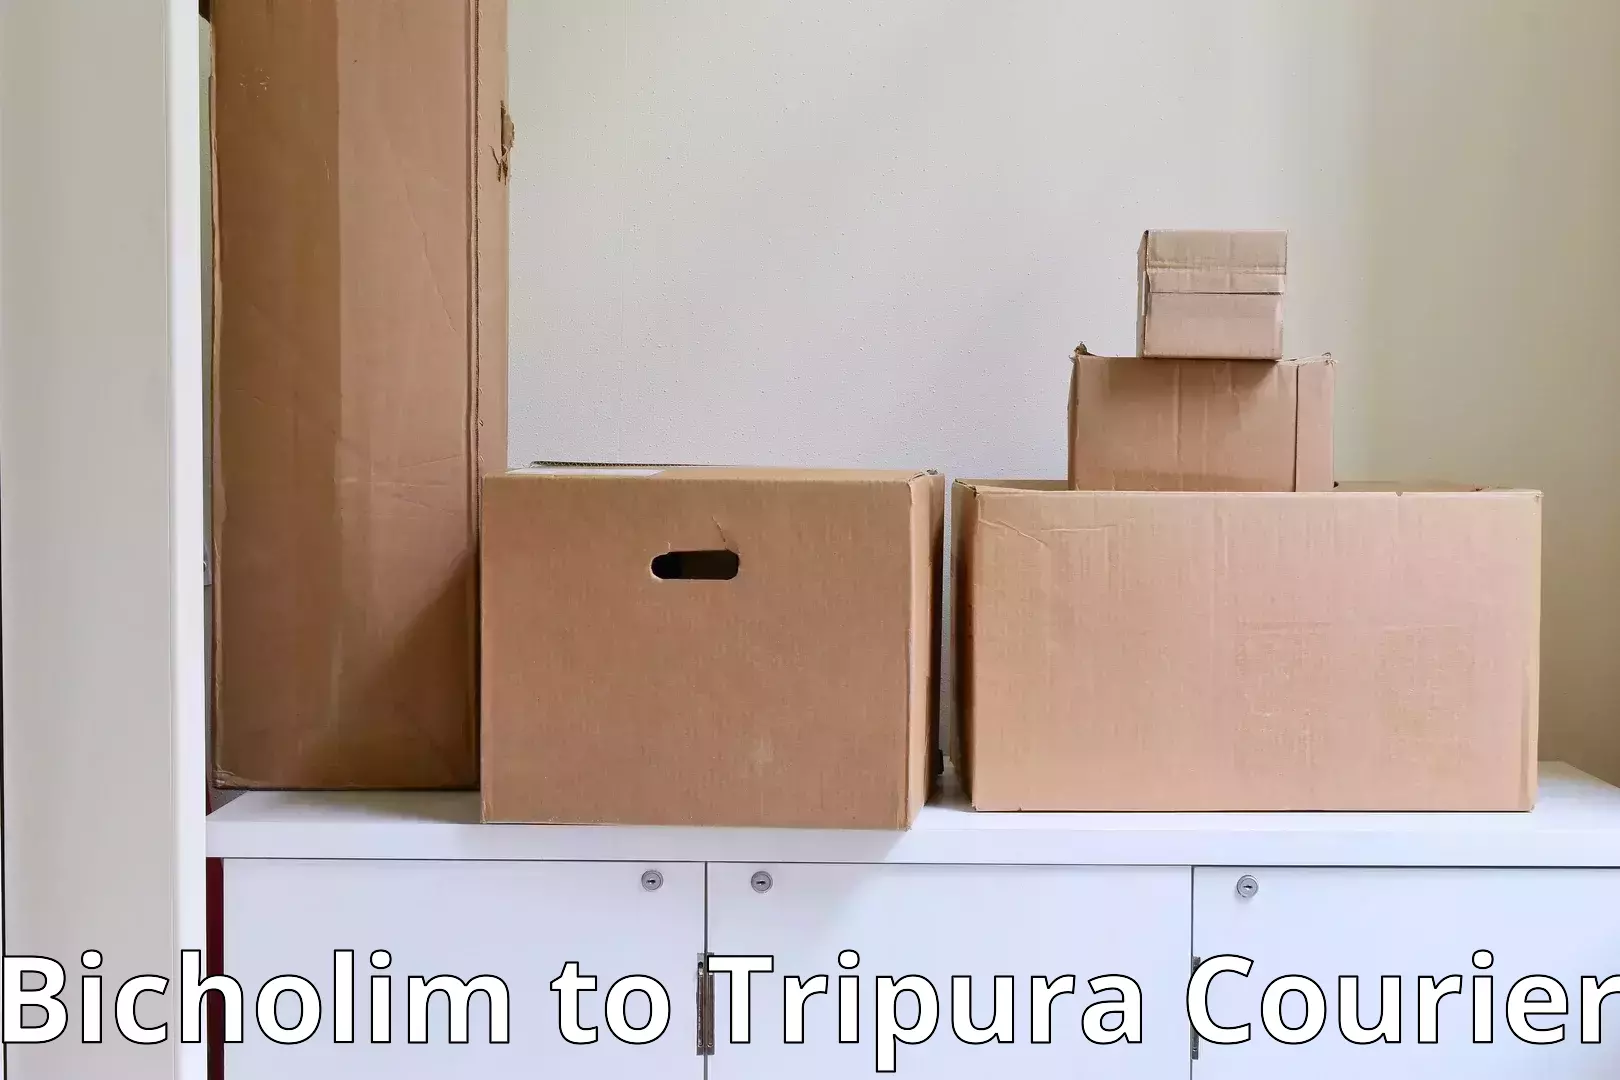 Furniture transport professionals in Bicholim to Tripura